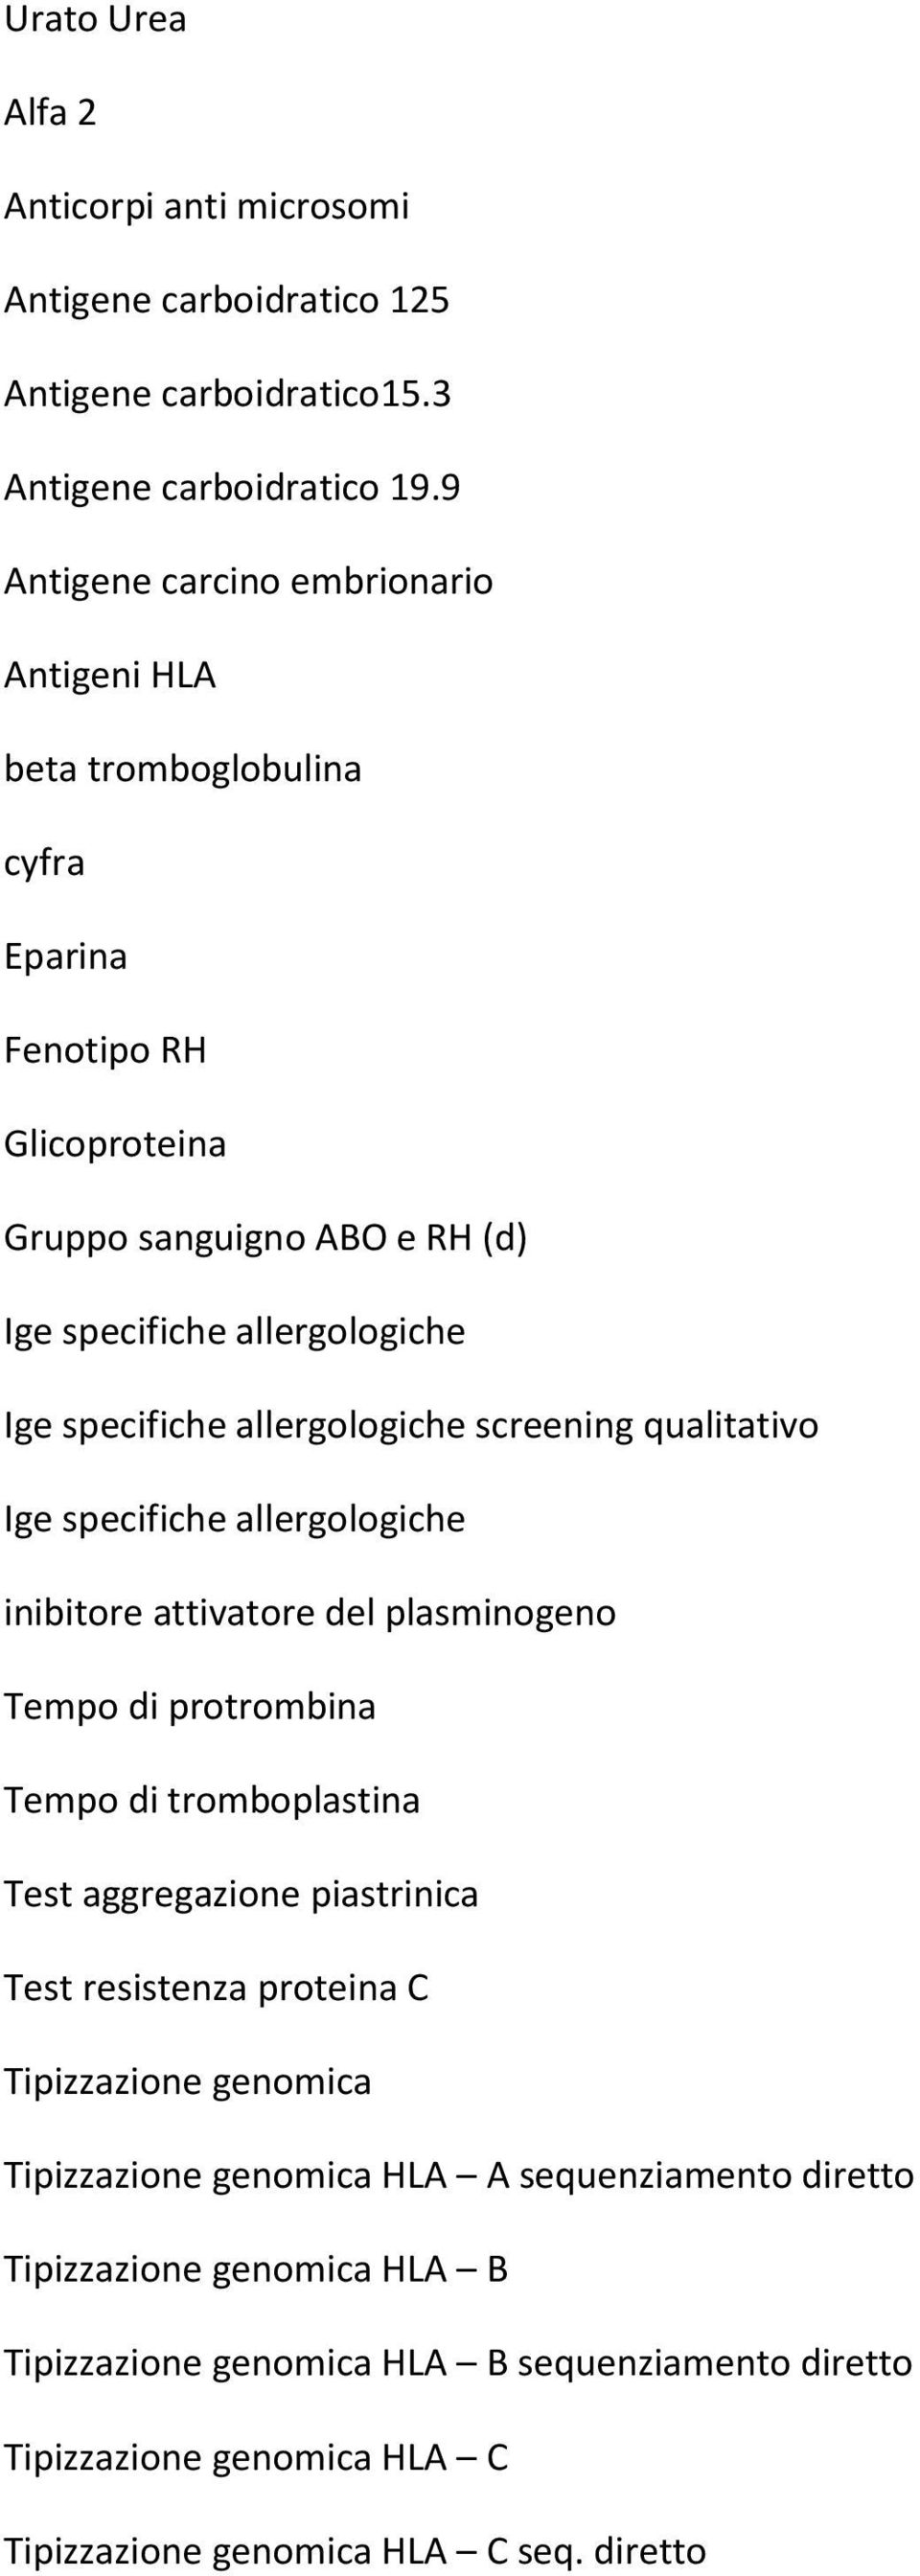 allergologiche screening qualitativo Ige specifiche allergologiche inibitore attivatore del plasminogeno Tempo di protrombina Tempo di tromboplastina Test aggregazione piastrinica